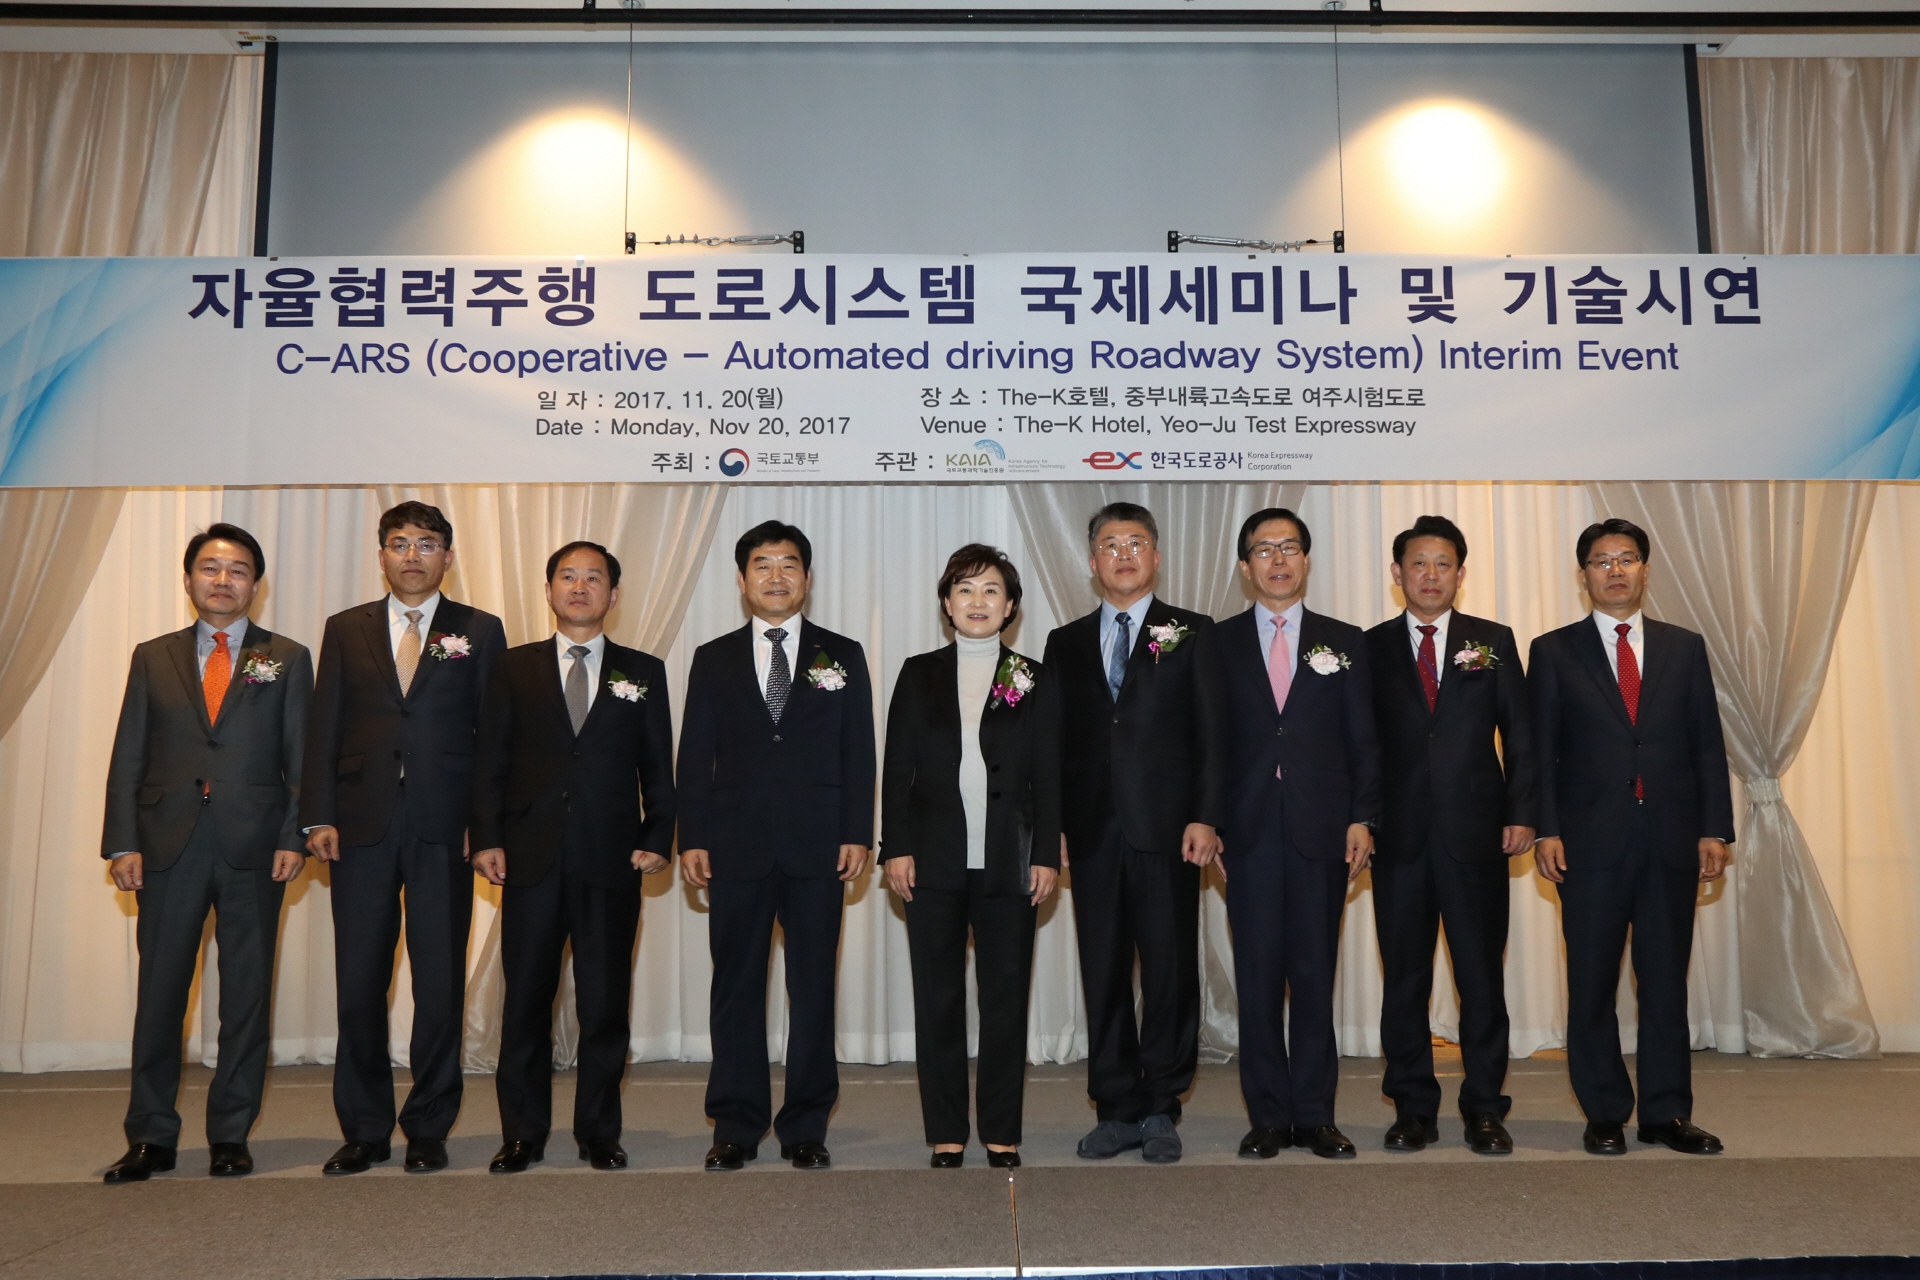 김현미장관, 자율협력주행 도로시스템 국제세미나 참석 및 시승 - 포토이미지